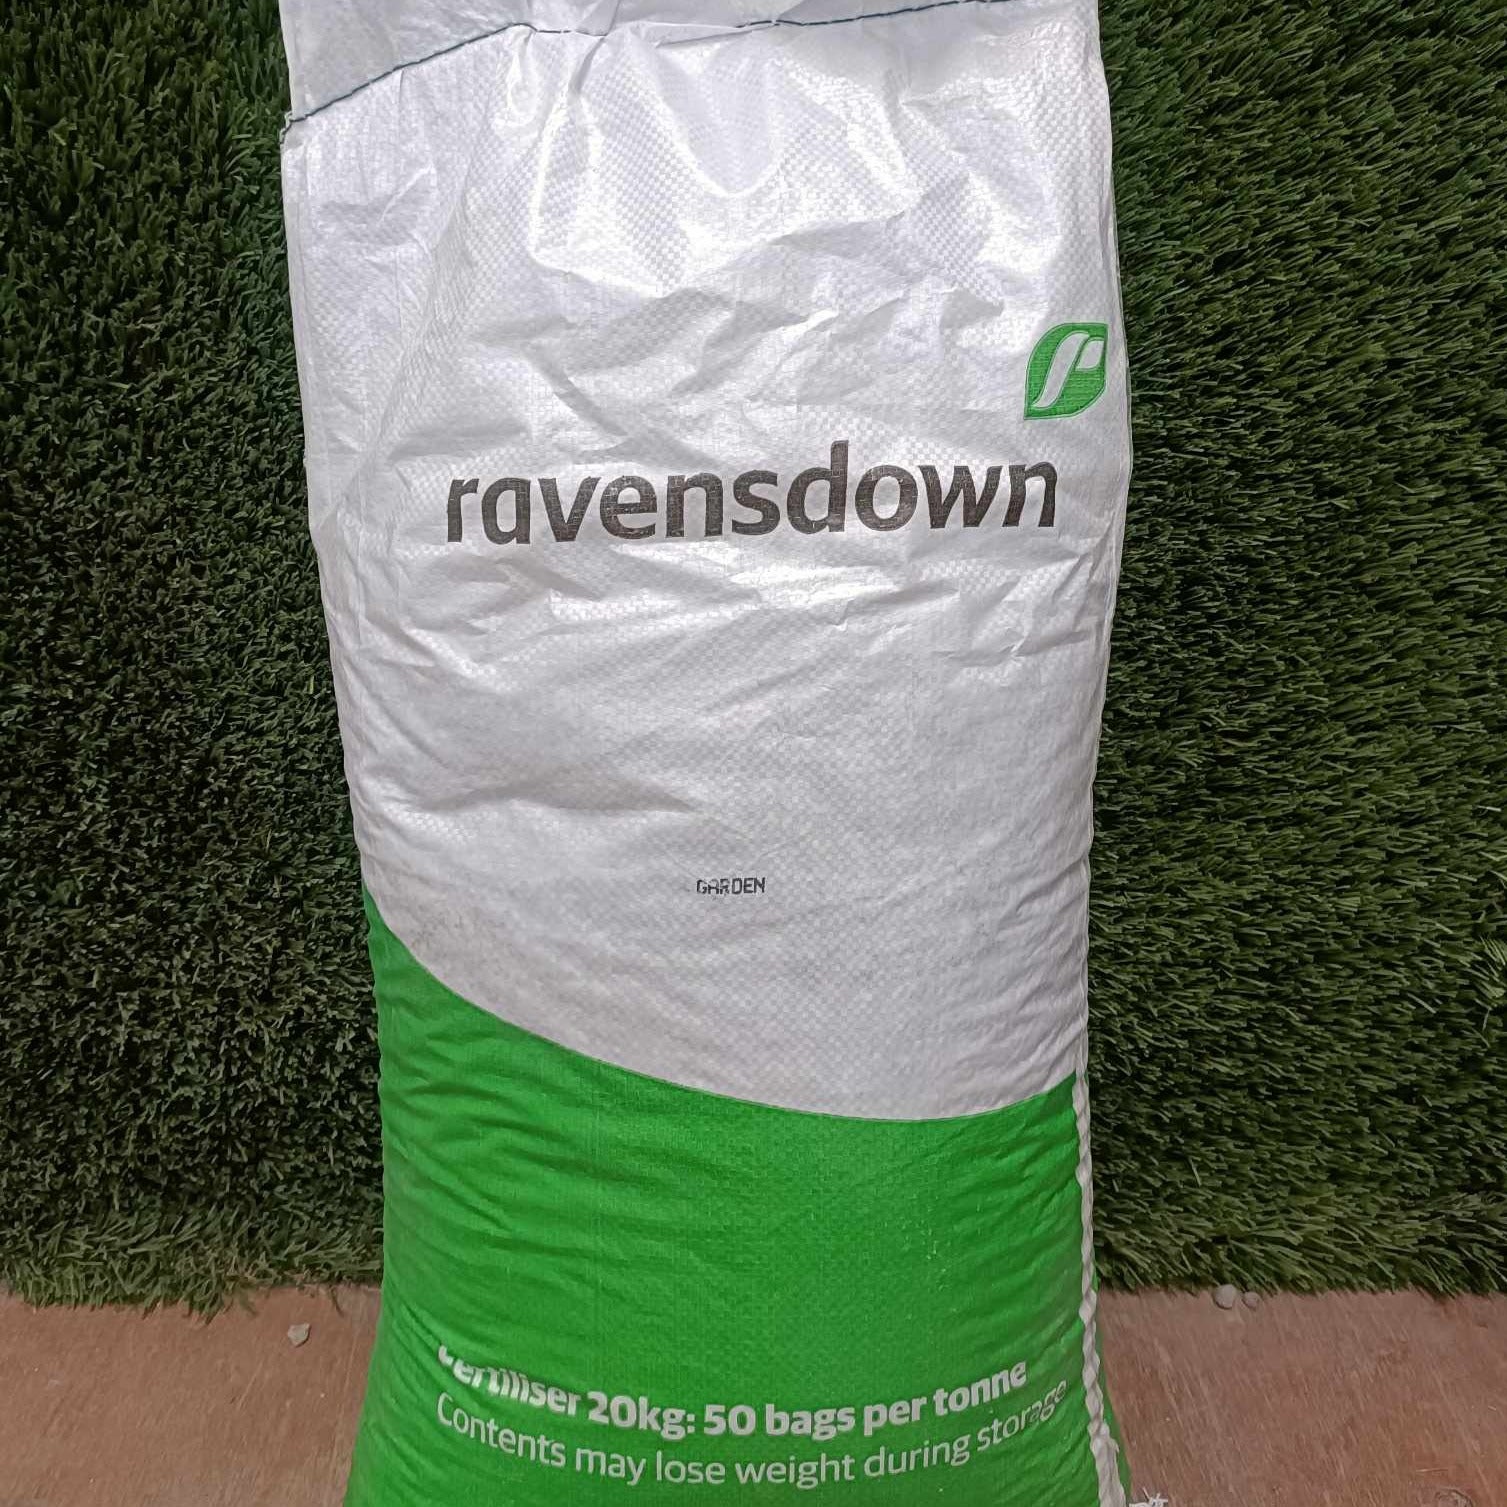 Ravensdown Garden Fertiliser 20kg